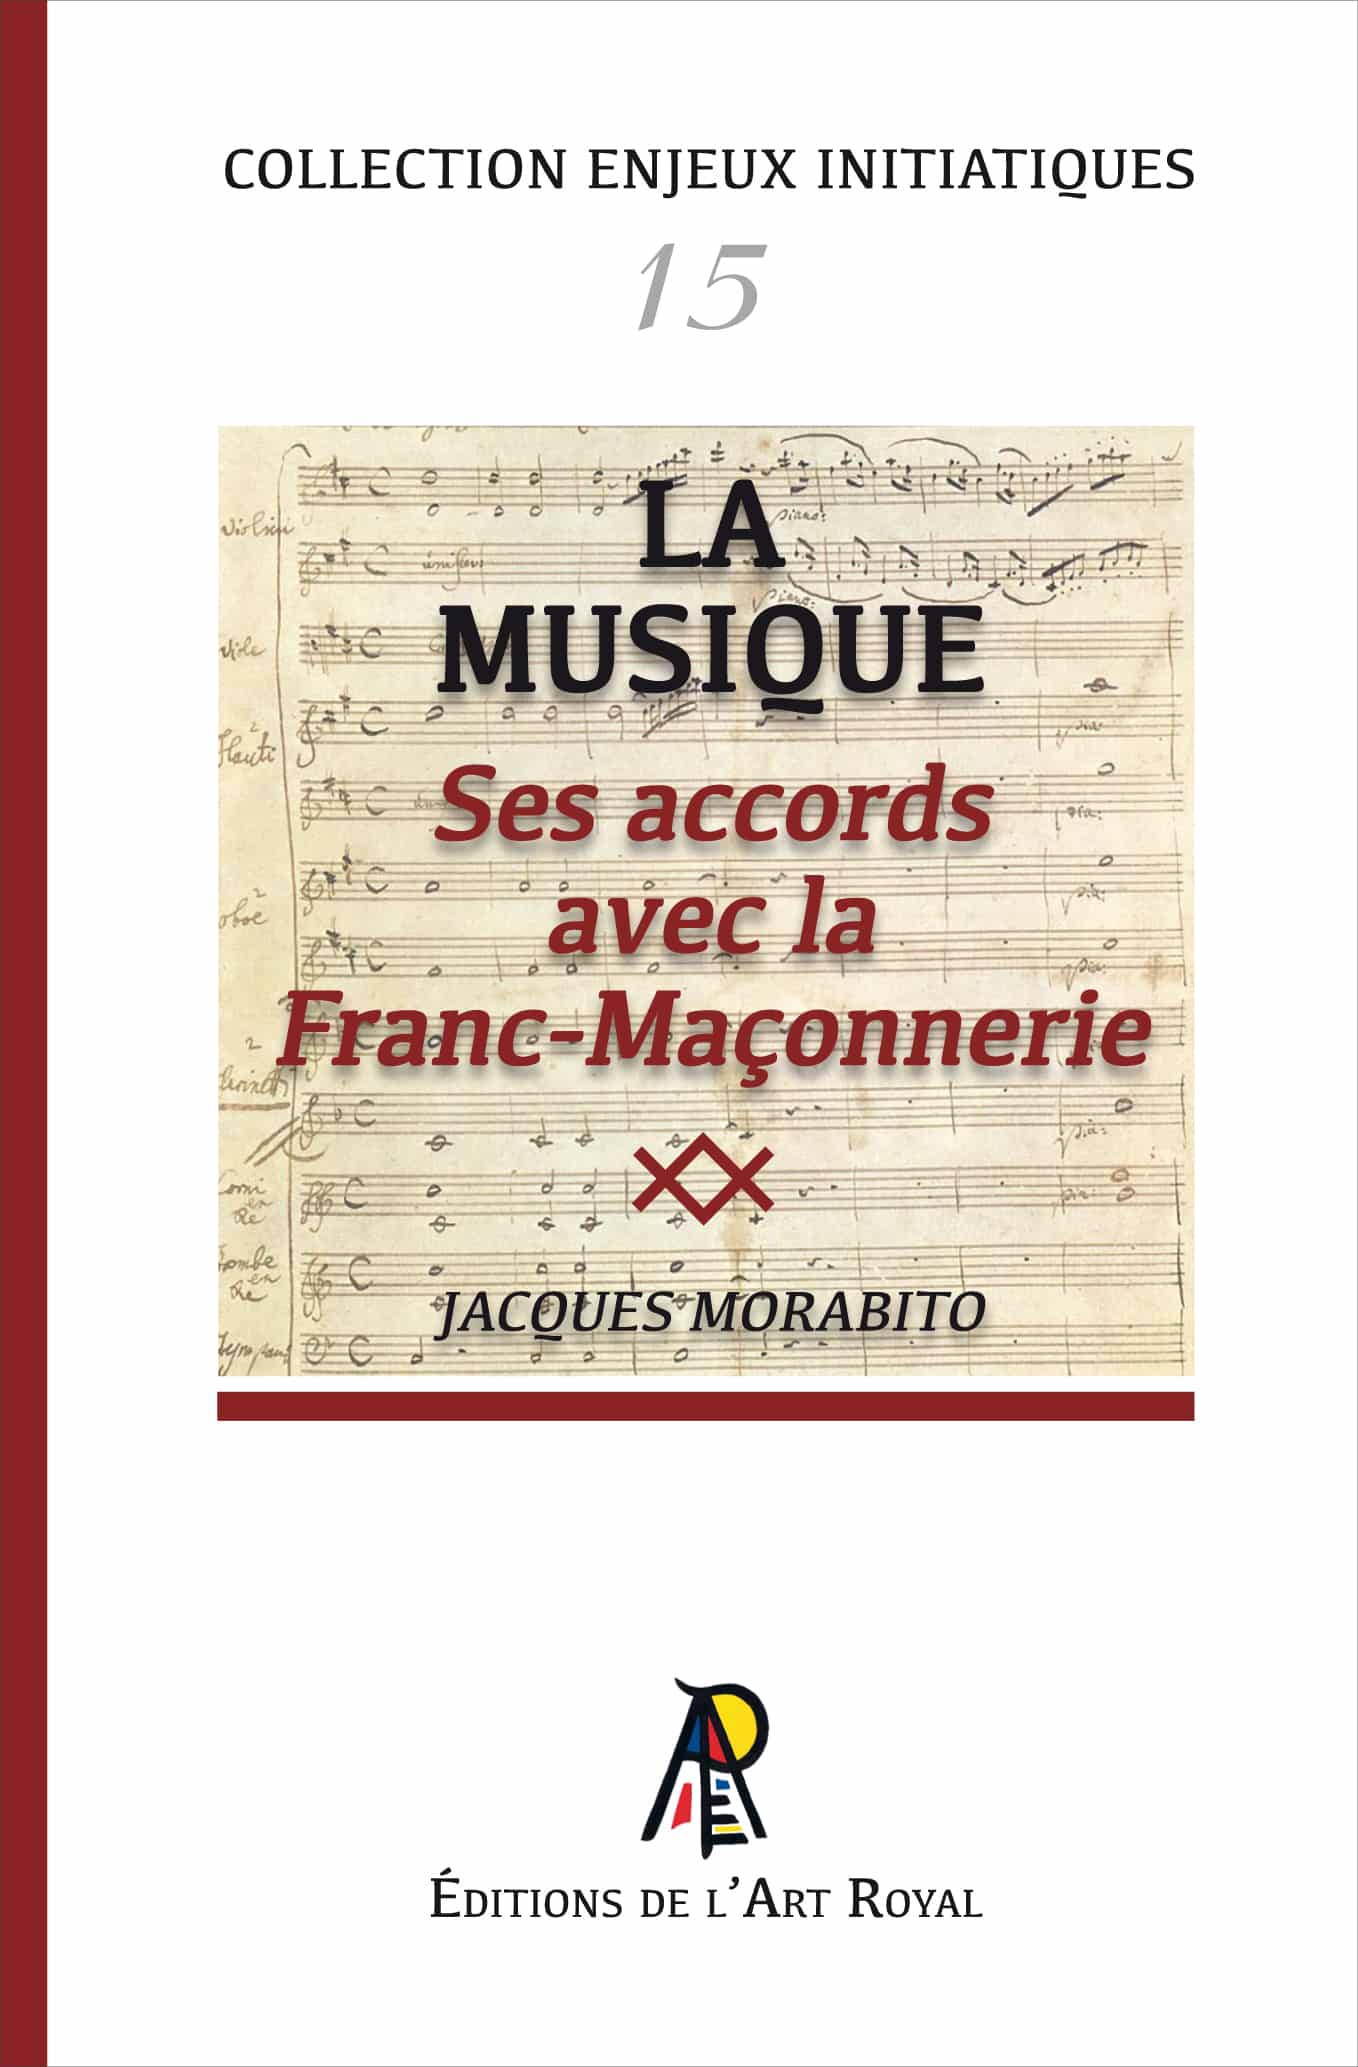 La Musique - Ses Accords avec la Franc-Maçonnerie, Jacques Morabito